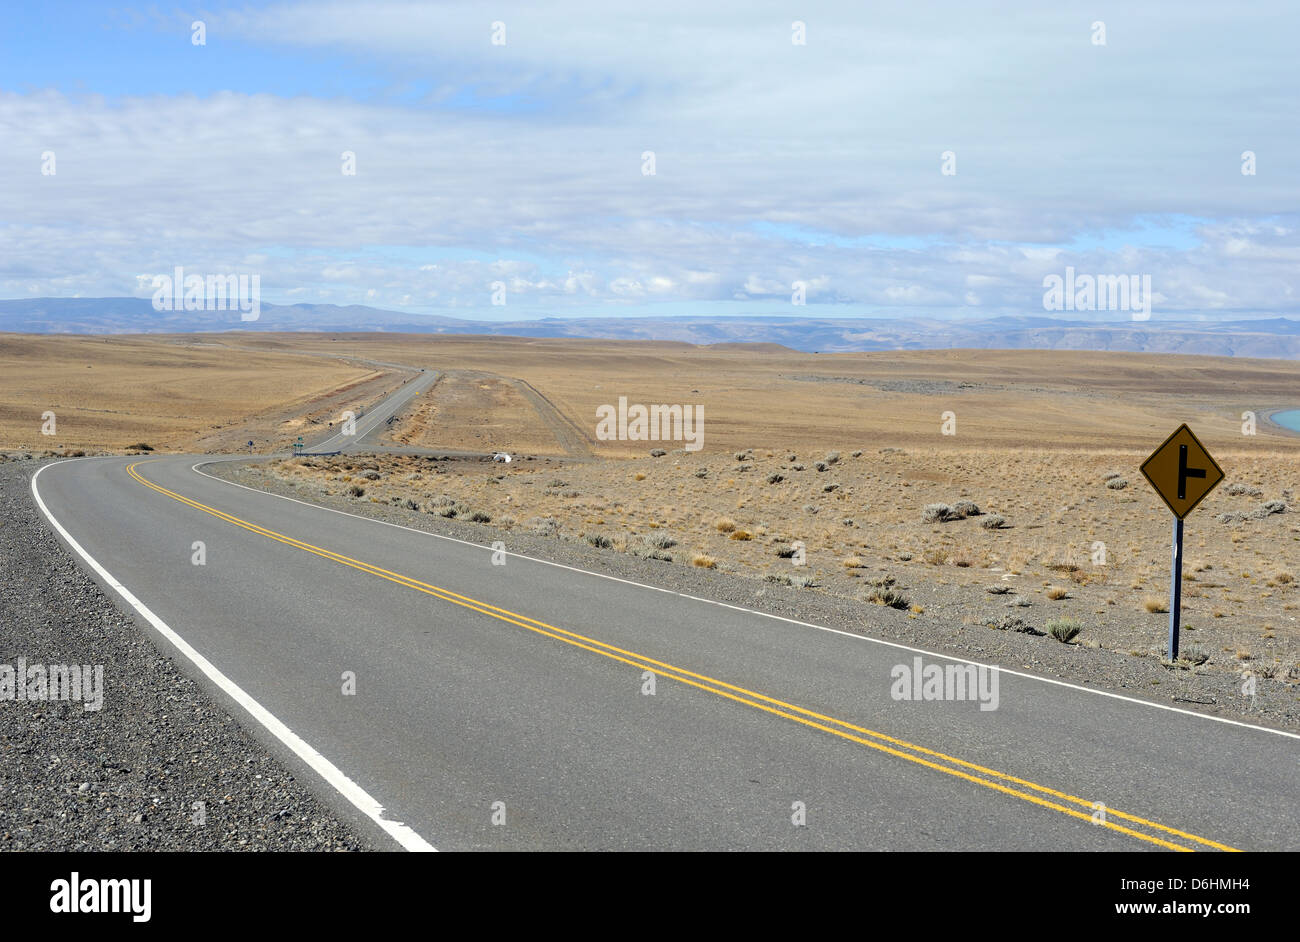 The road from El Calafate to El Chalten winds across flat pampas.  El Chalten, Argentina. Stock Photo